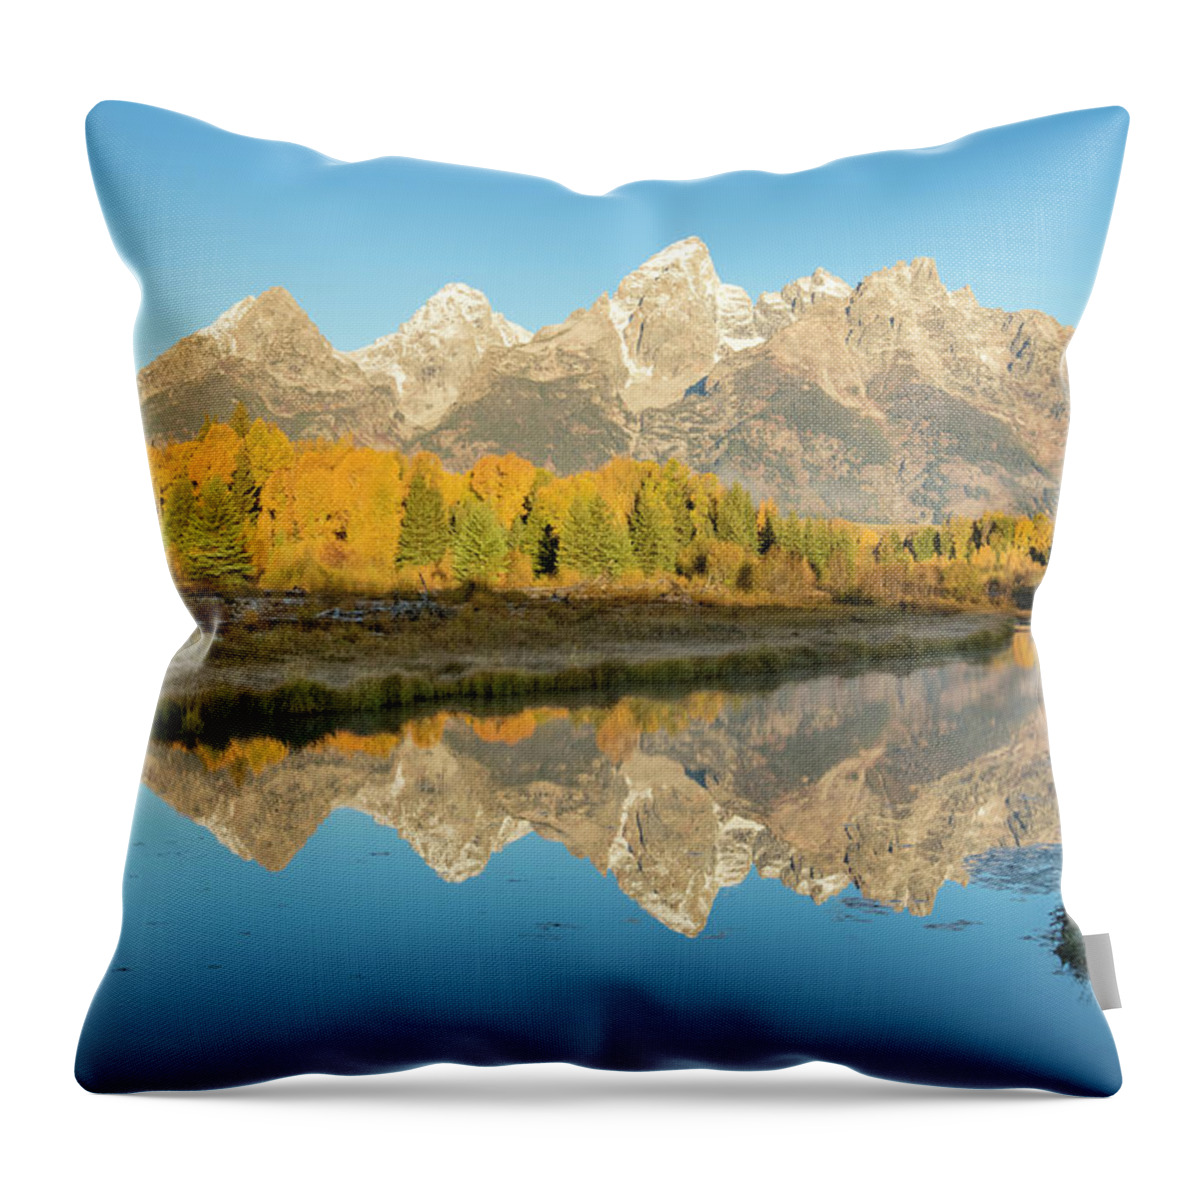 Grand Teton National Park Throw Pillow featuring the photograph Schwabacher Sunrise by D Robert Franz